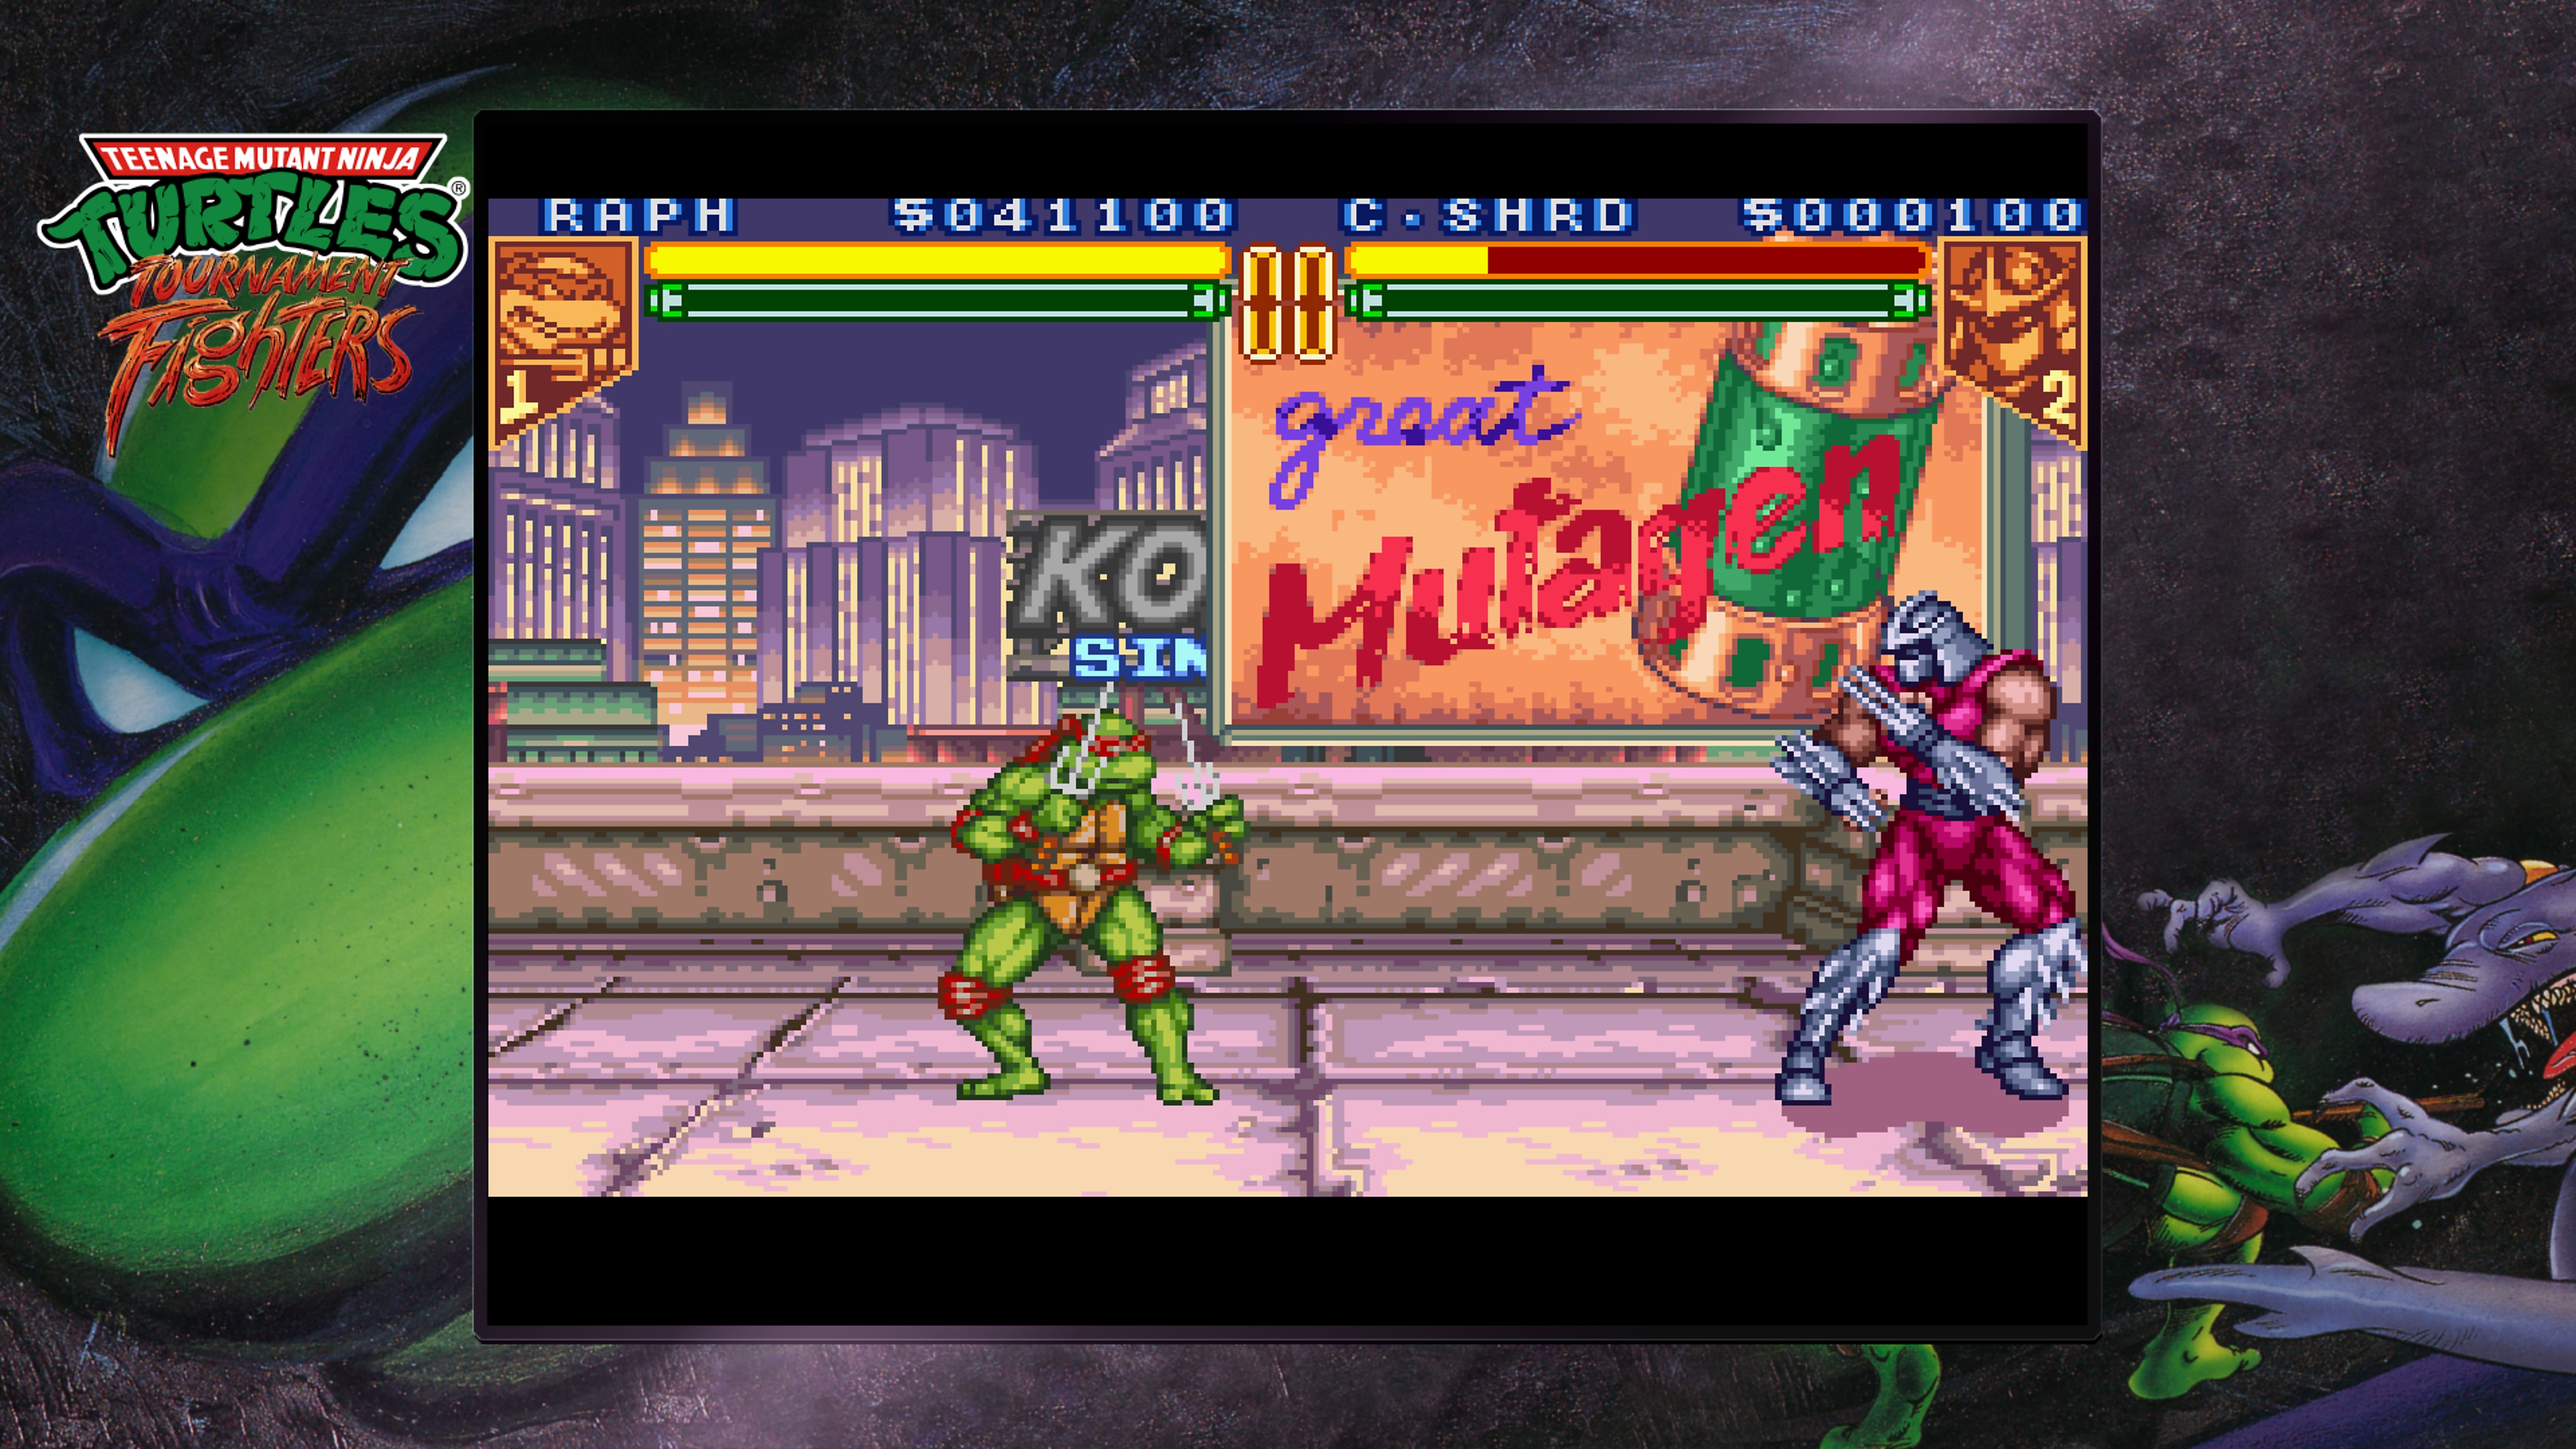 Captura de pantalla de Teenage Mutant Ninja Turtles Collection - Tournament Fighters en la que Raphael pelea contra Despedazador en un tejado